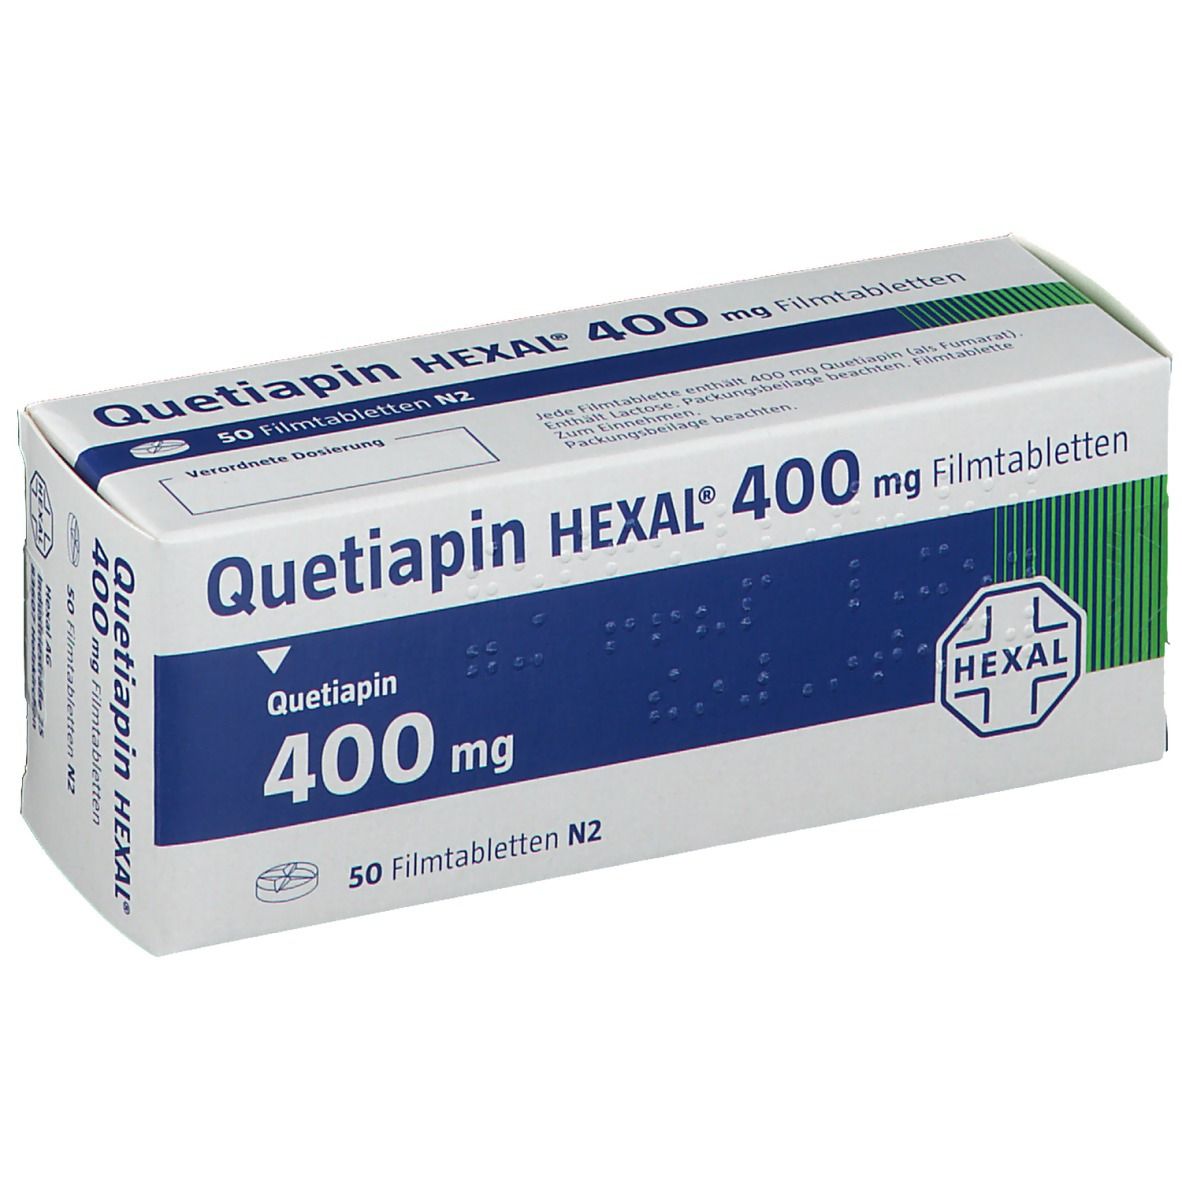 Quetiapin HEXAL® 400 mg